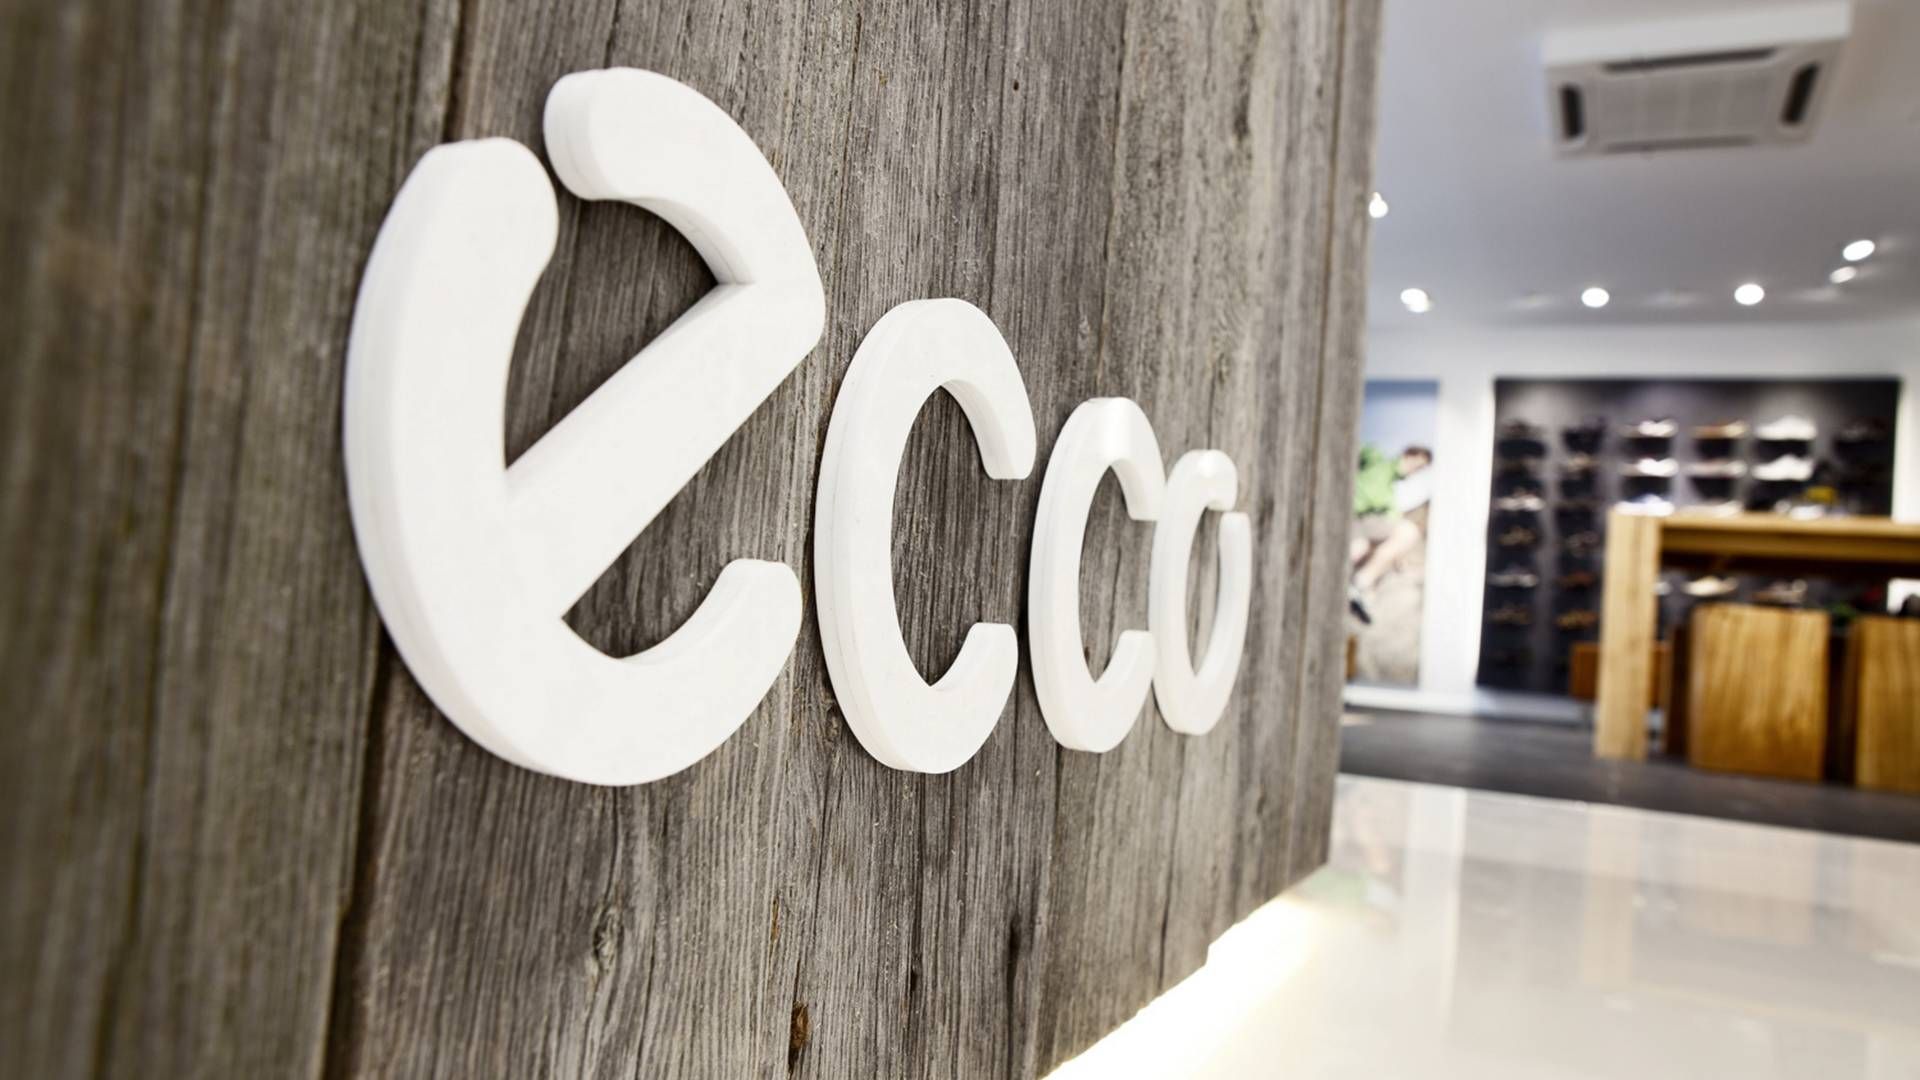 Den danske skokoncern Ecco har 2.200 konceptbutikker rundt om i verden - 200 af dem i Rusland. | Foto: PR / Ecco